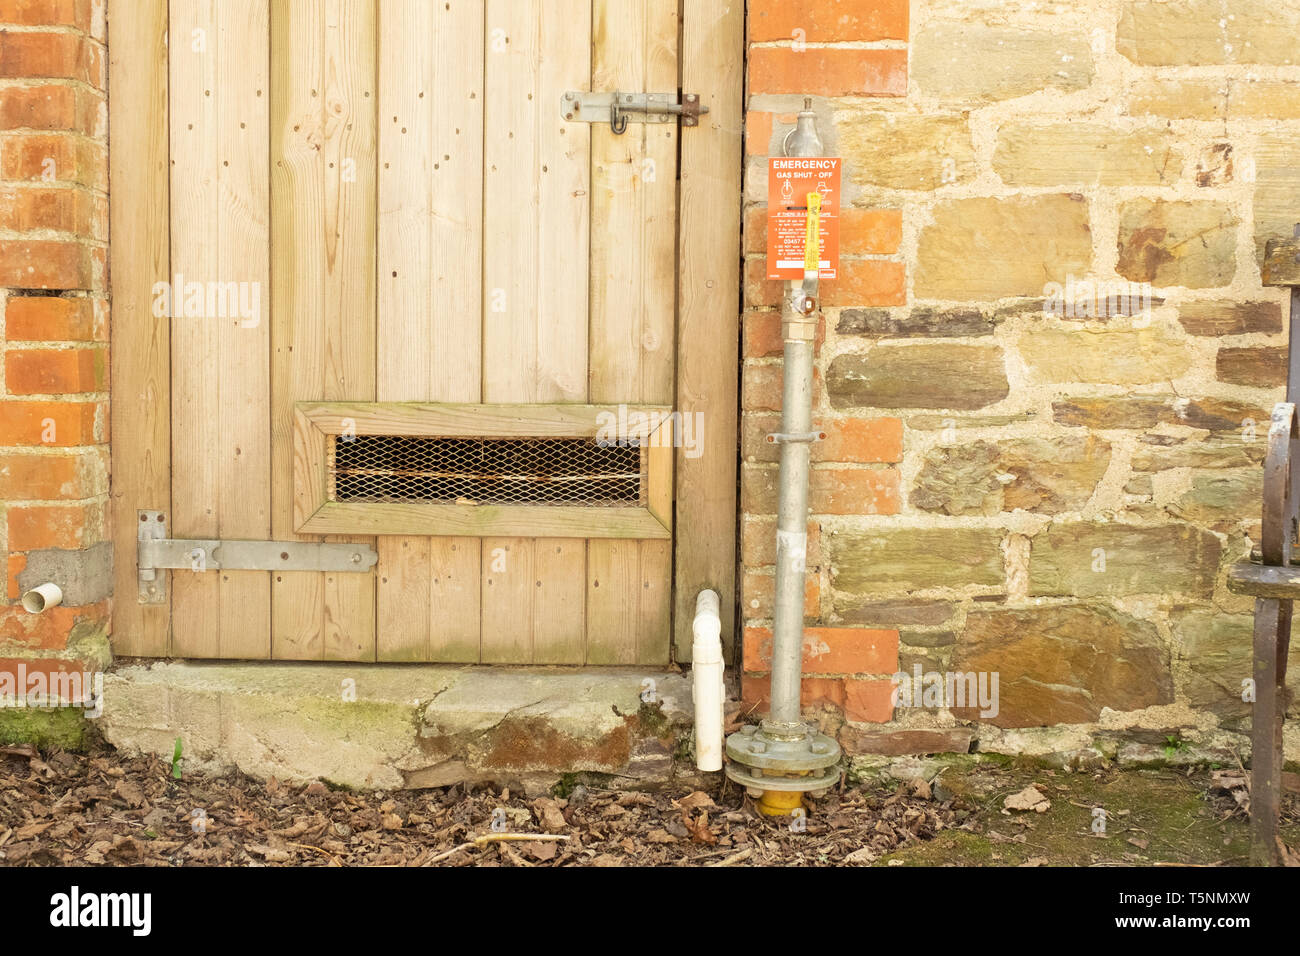 L'esterno di gas di emergenza valvola di arresto all'aperto o sulla posizione, Cornwall, Inghilterra. Questa immagine è utile per localizzare la tipica valvola esterna. Foto Stock